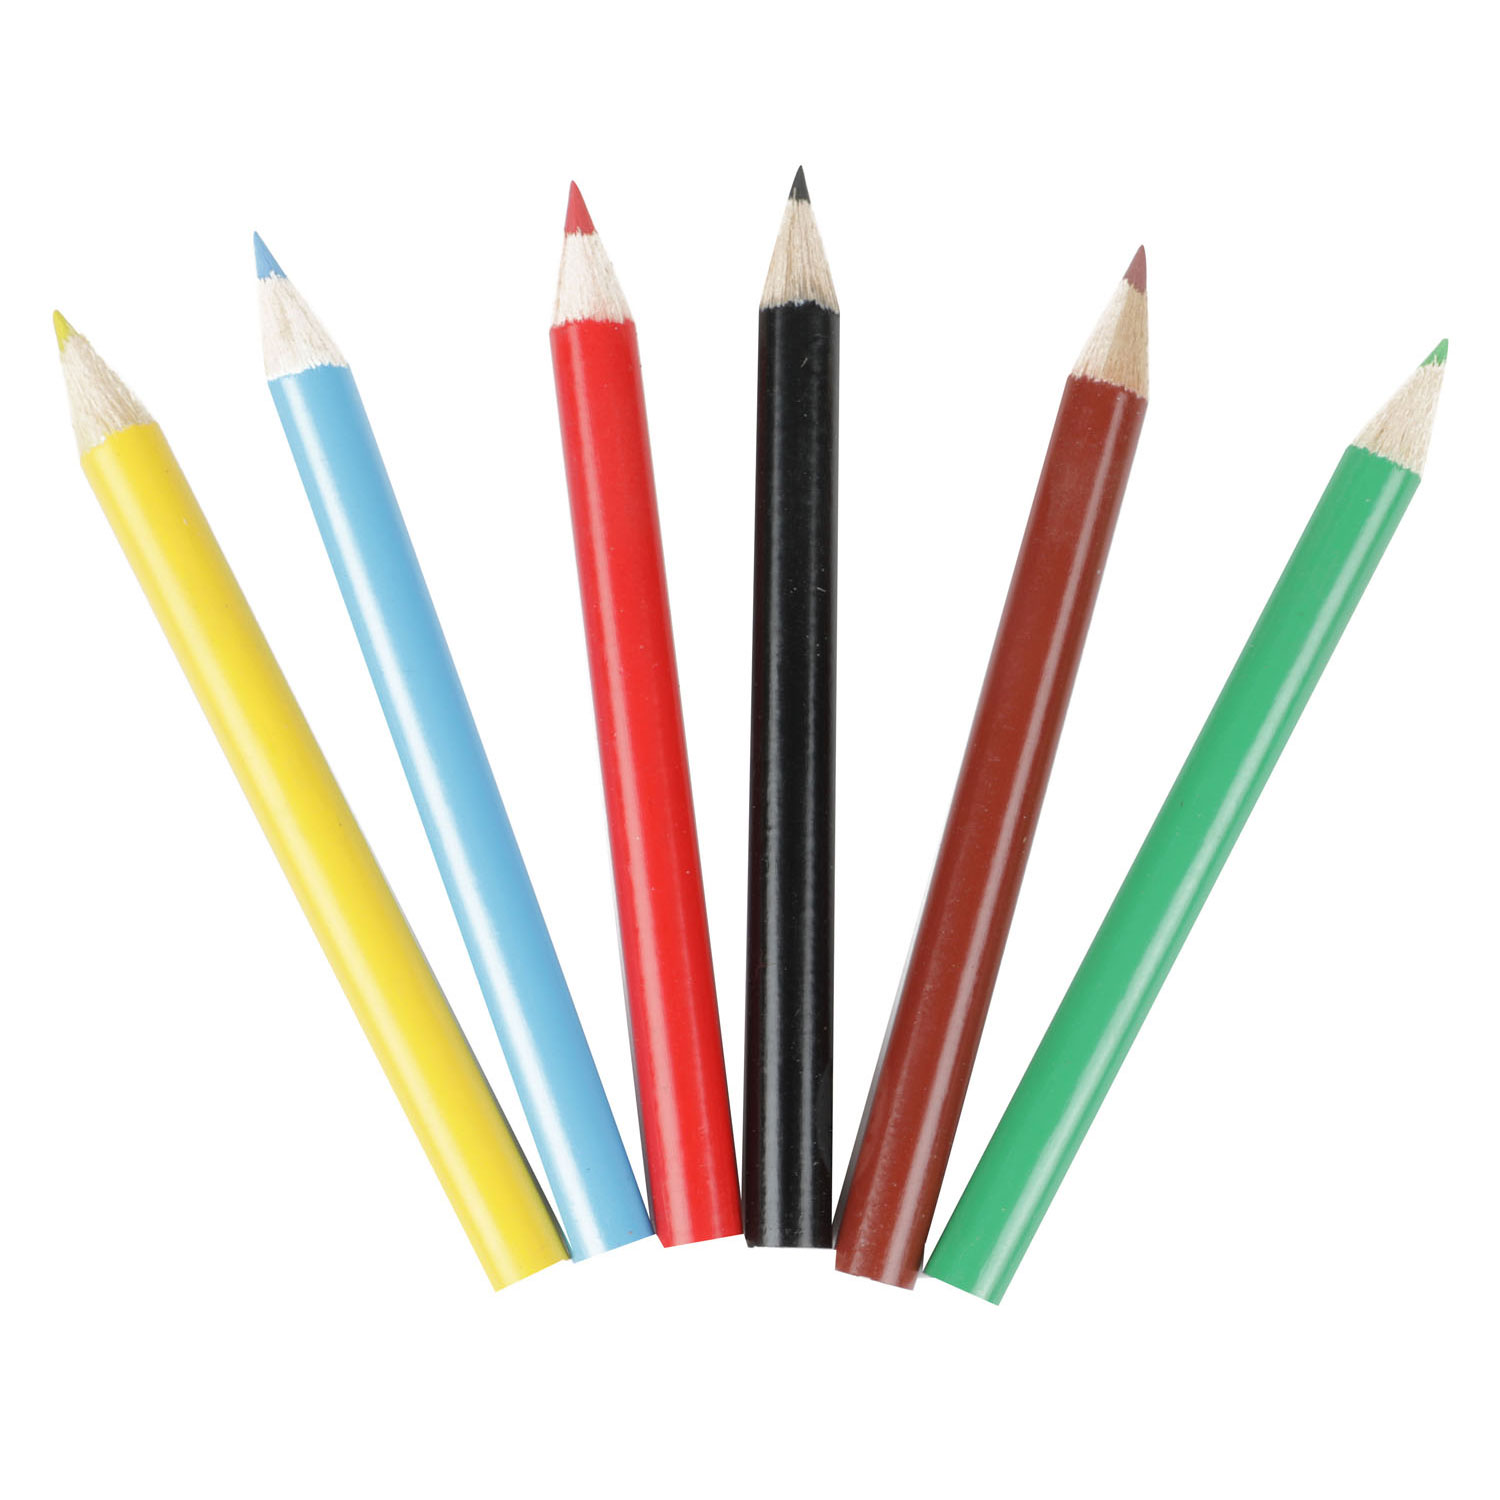 Crayons de couleur, 6 pièces.